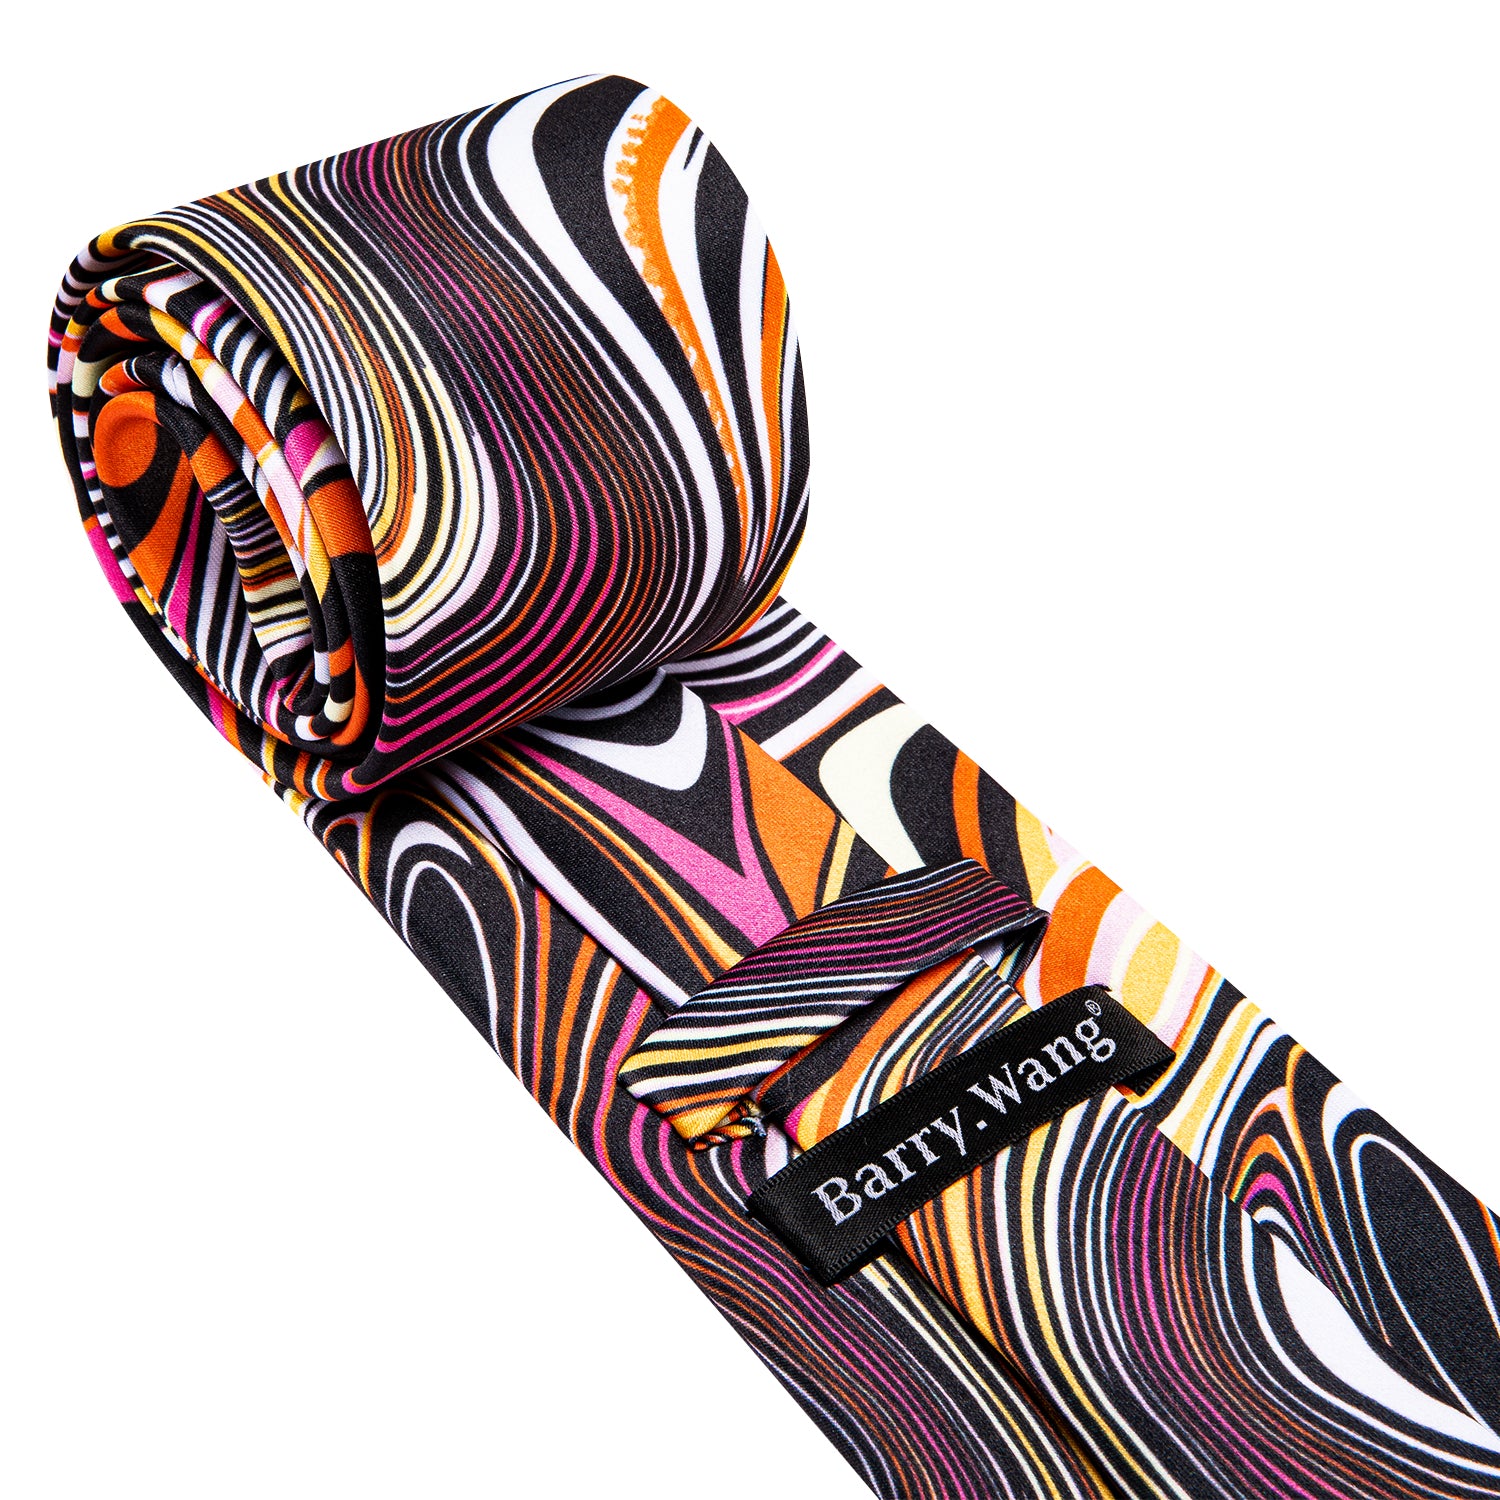 Black Orange Novelty Silk Tie Hanky Cufflinks Set